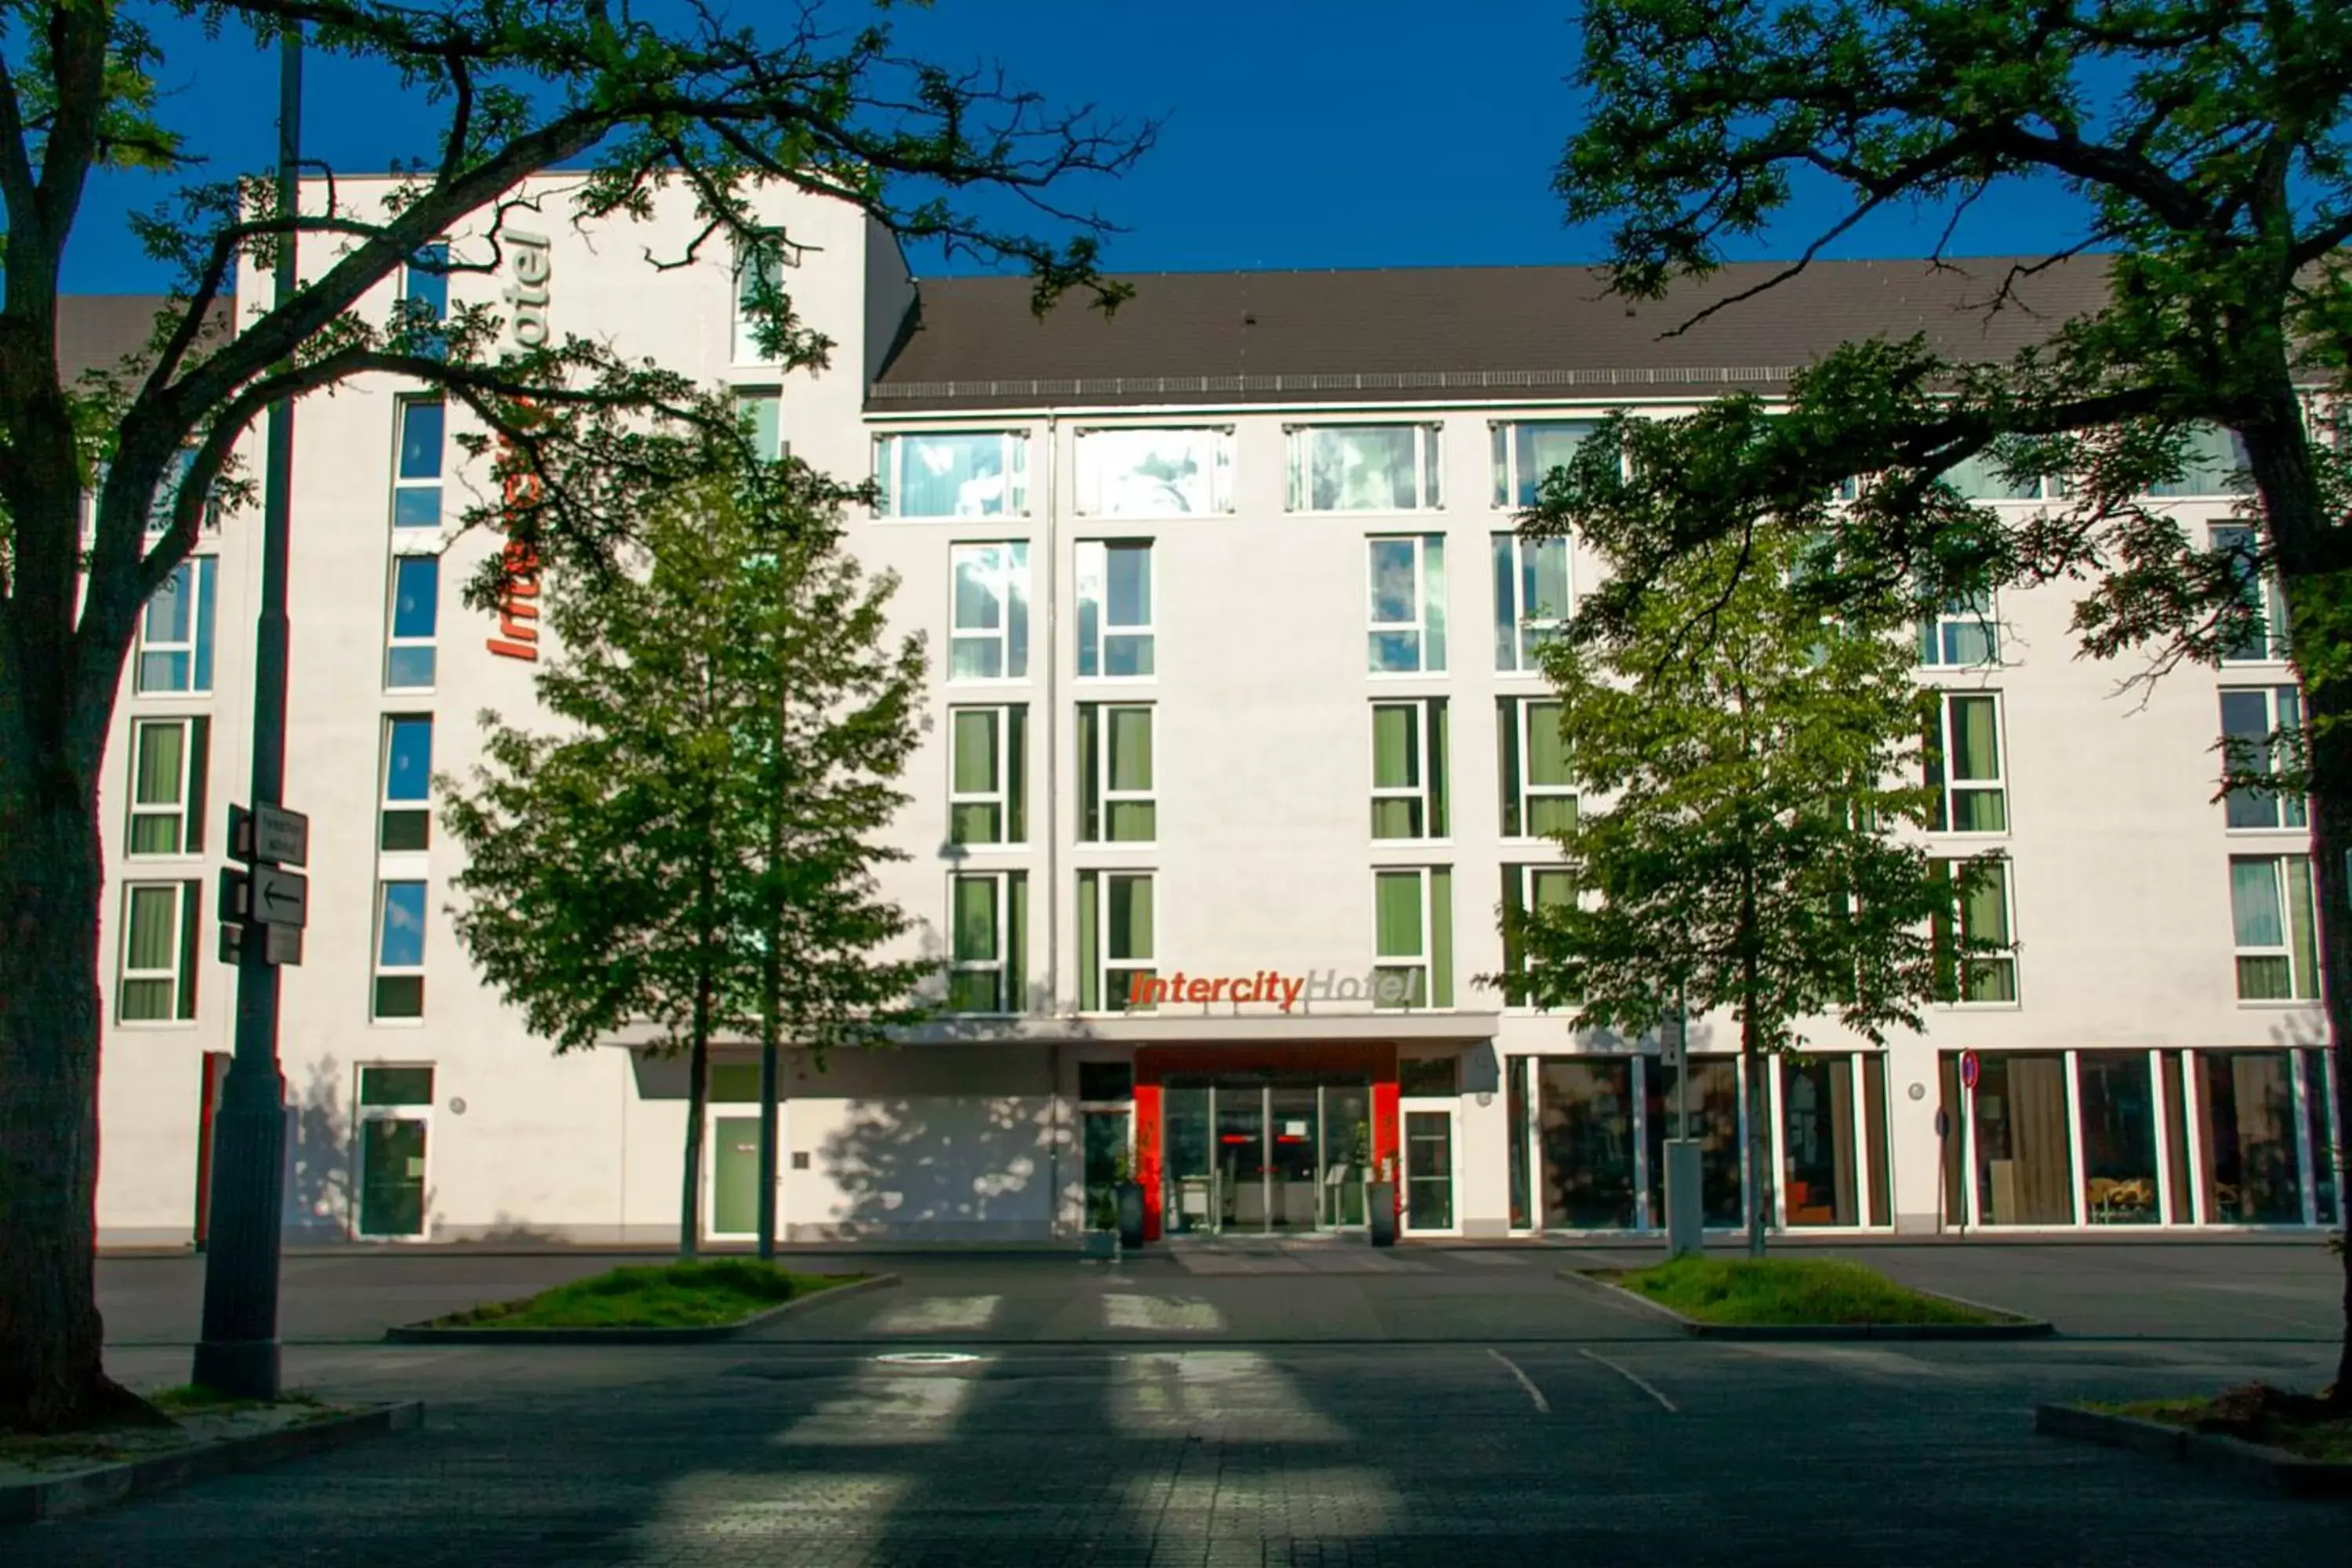 Facade/entrance, Property Building in IntercityHotel Darmstadt